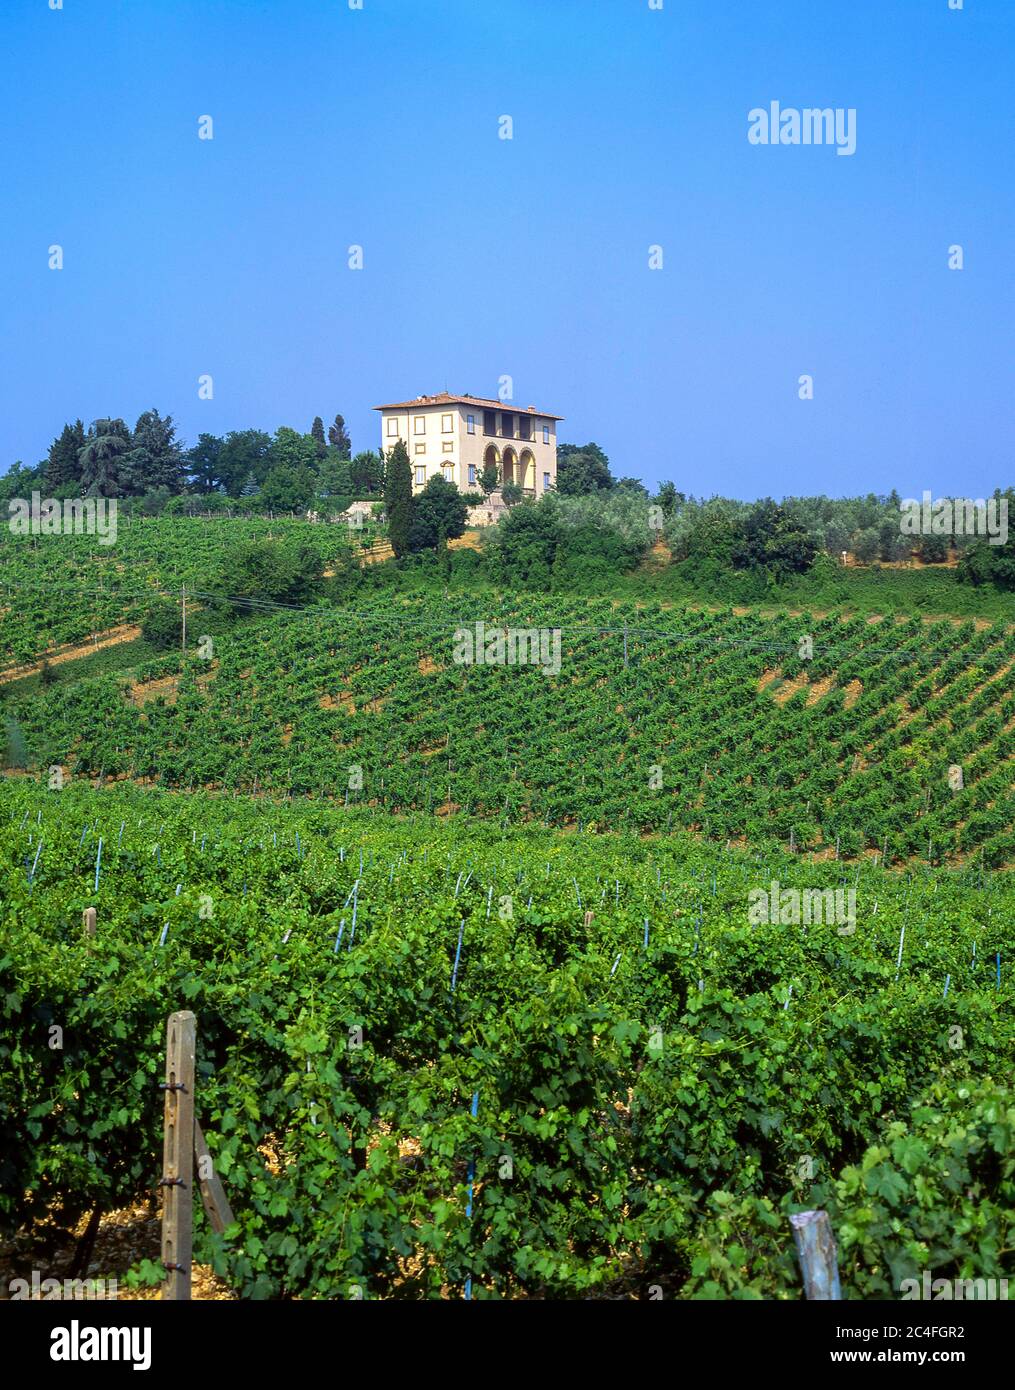 Villa toscana y viñedo, provincia de Lucca, Toscana Región, Italia Foto de stock